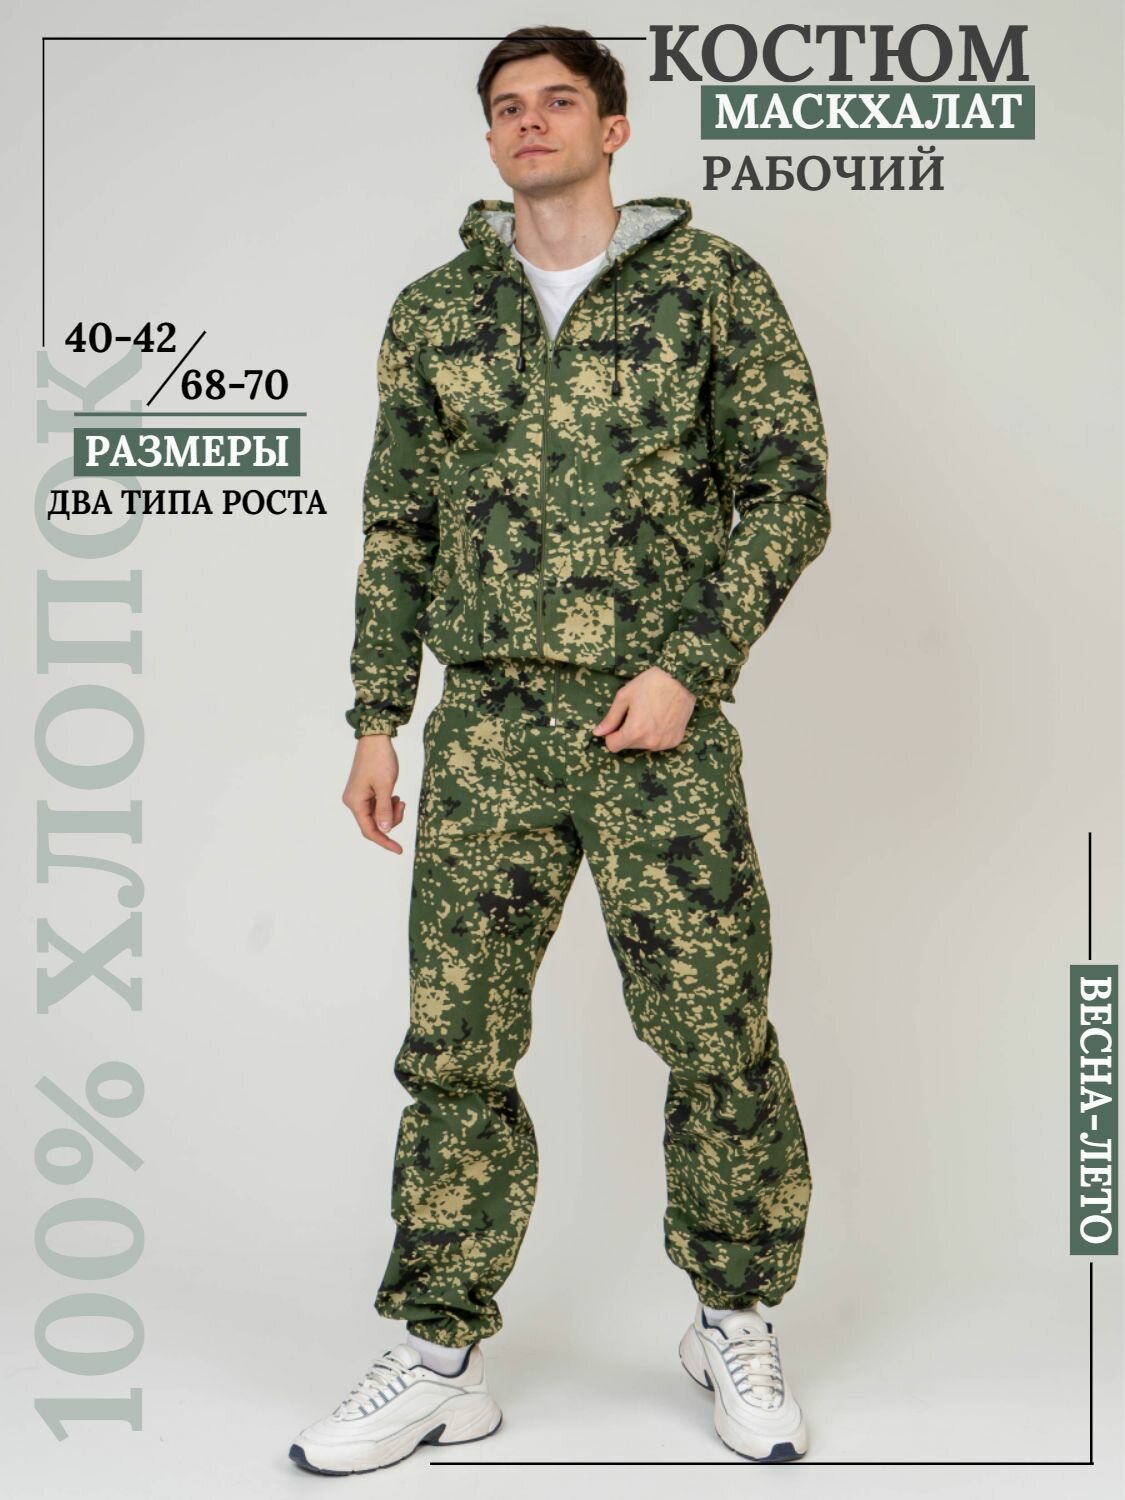 Костюм мужской камуфляжный для рыбалки и активного отдыха ПромДизайн (куртка+брюки), 100% хлопок/ Костюм маскировочный, 68-170RU